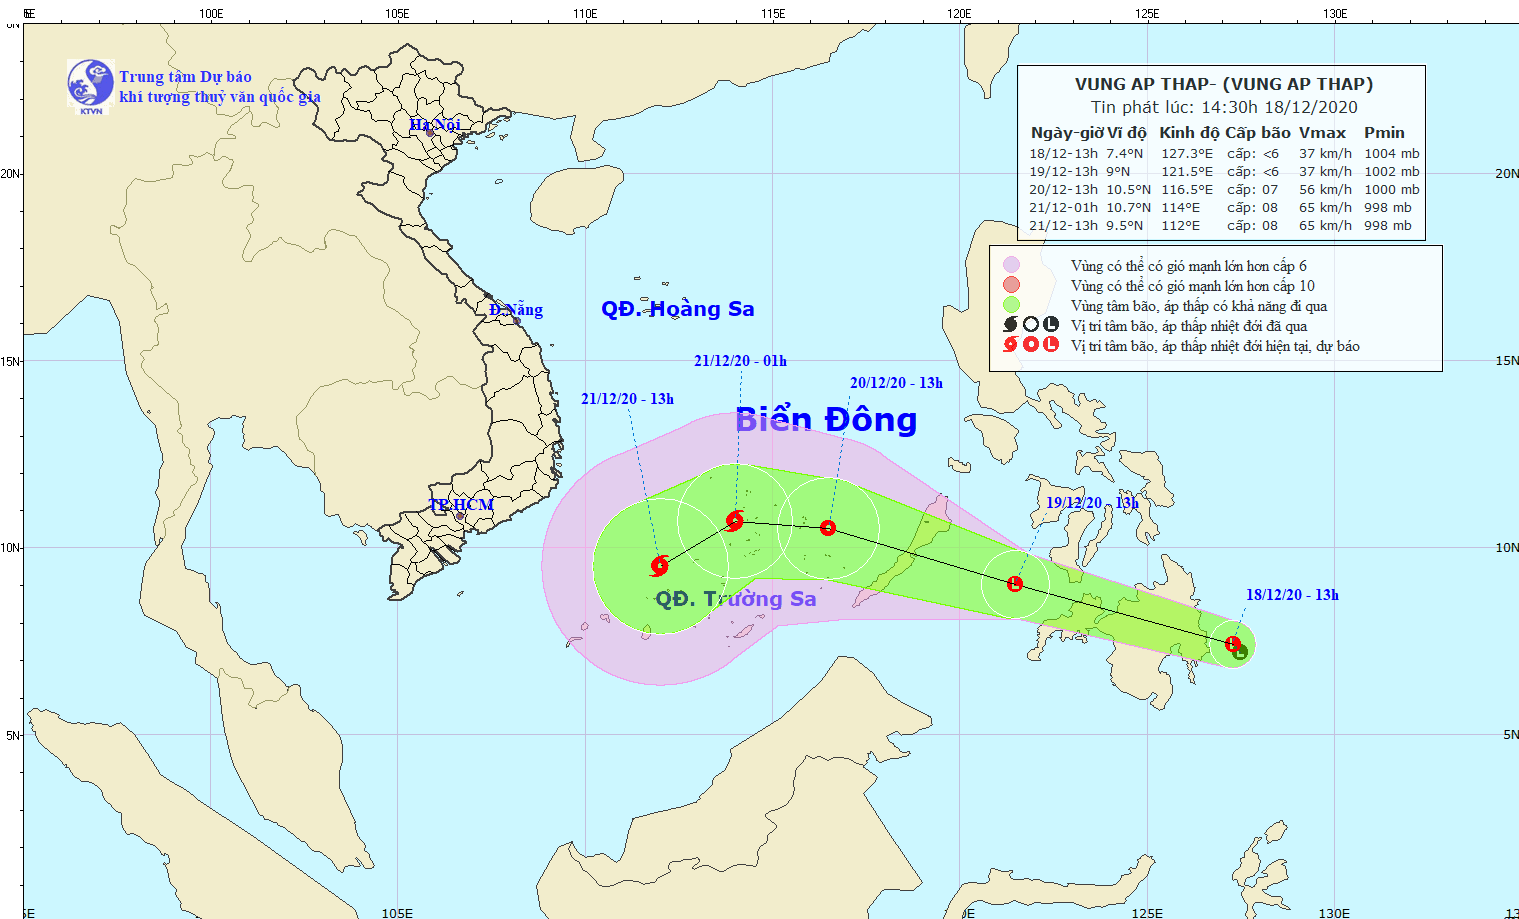 Biển Đông chuẩn bị đón áp thấp nhiệt đới khả năng mạnh lên thành bão